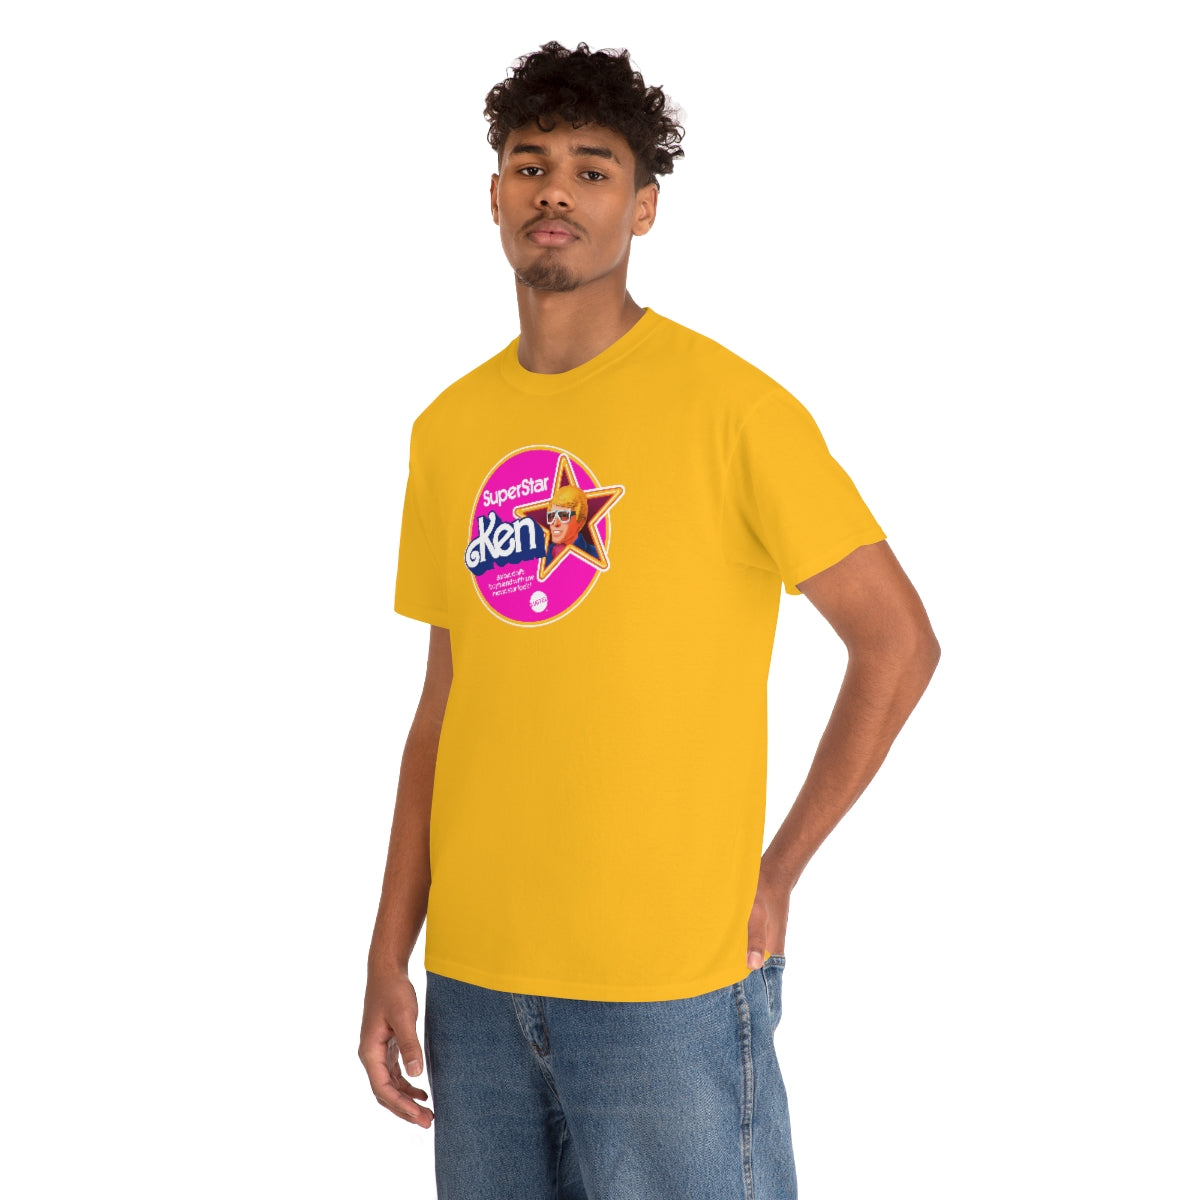 Superstar Ken T-Shirt